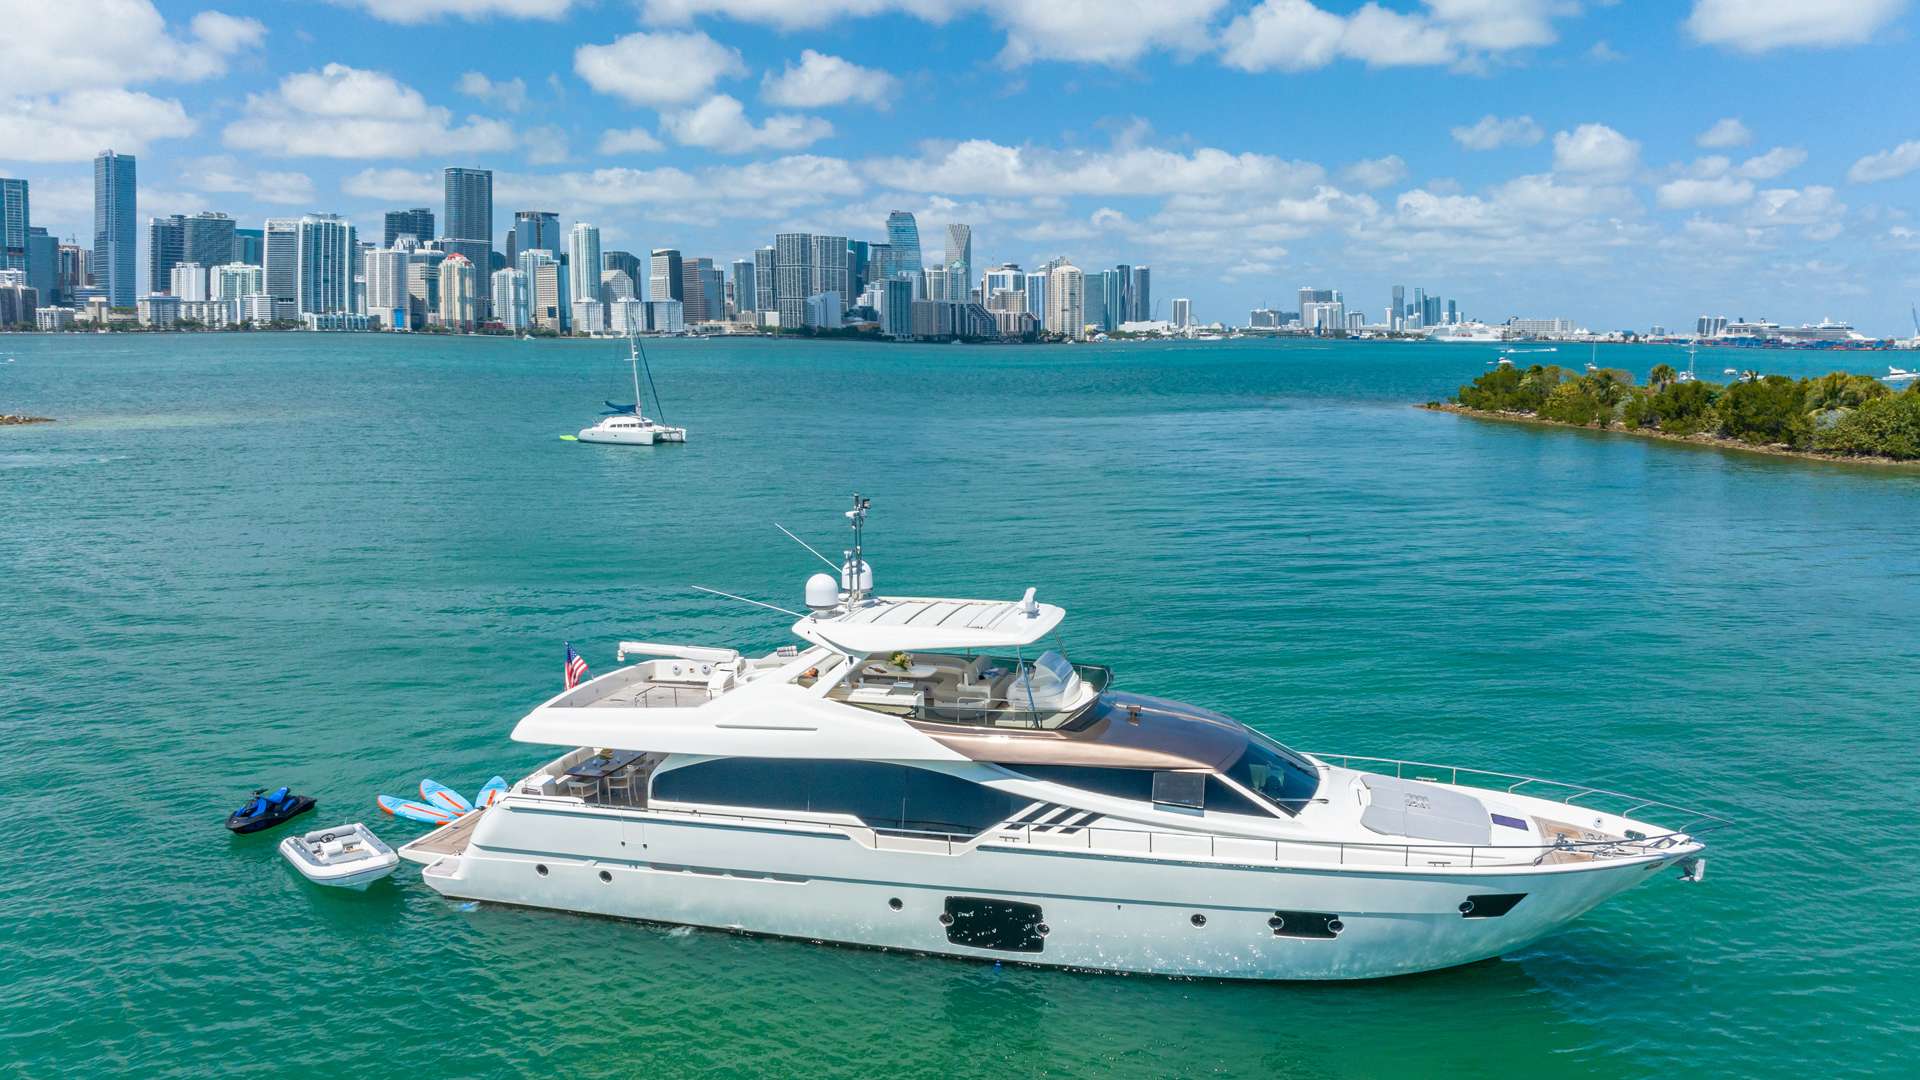 HOYA SAXA - Yacht Charter Lake Champlain & Boat hire in US East Coast & Bahamas 2